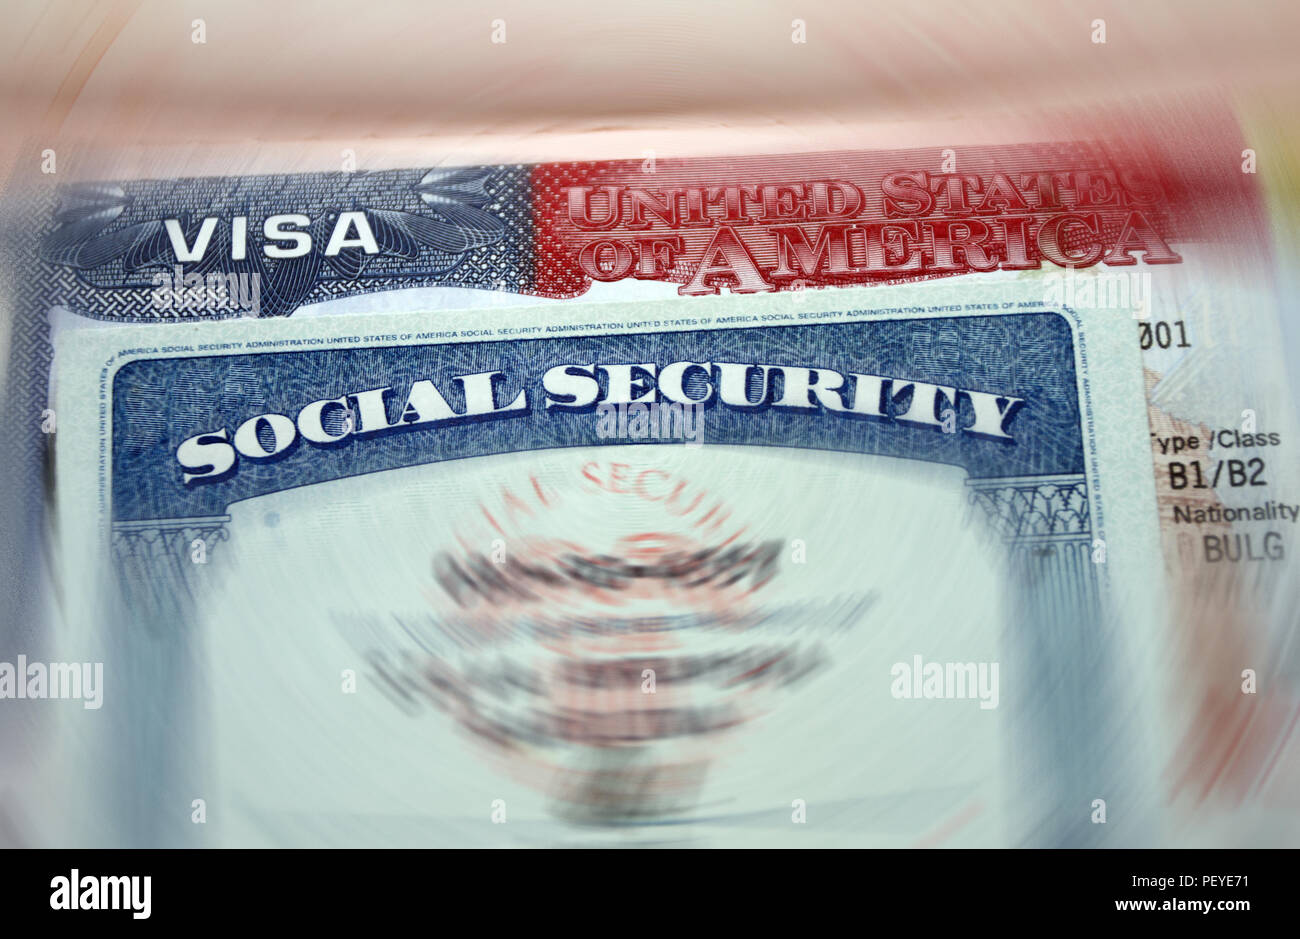 Das amerikanische Visum in ein verschwommenes Reisepass seite Hintergrund und Sozialversicherungsnummer persönliches Dokument. SSN - Sozialversicherungsnummer für in den USA live-s Stockfoto